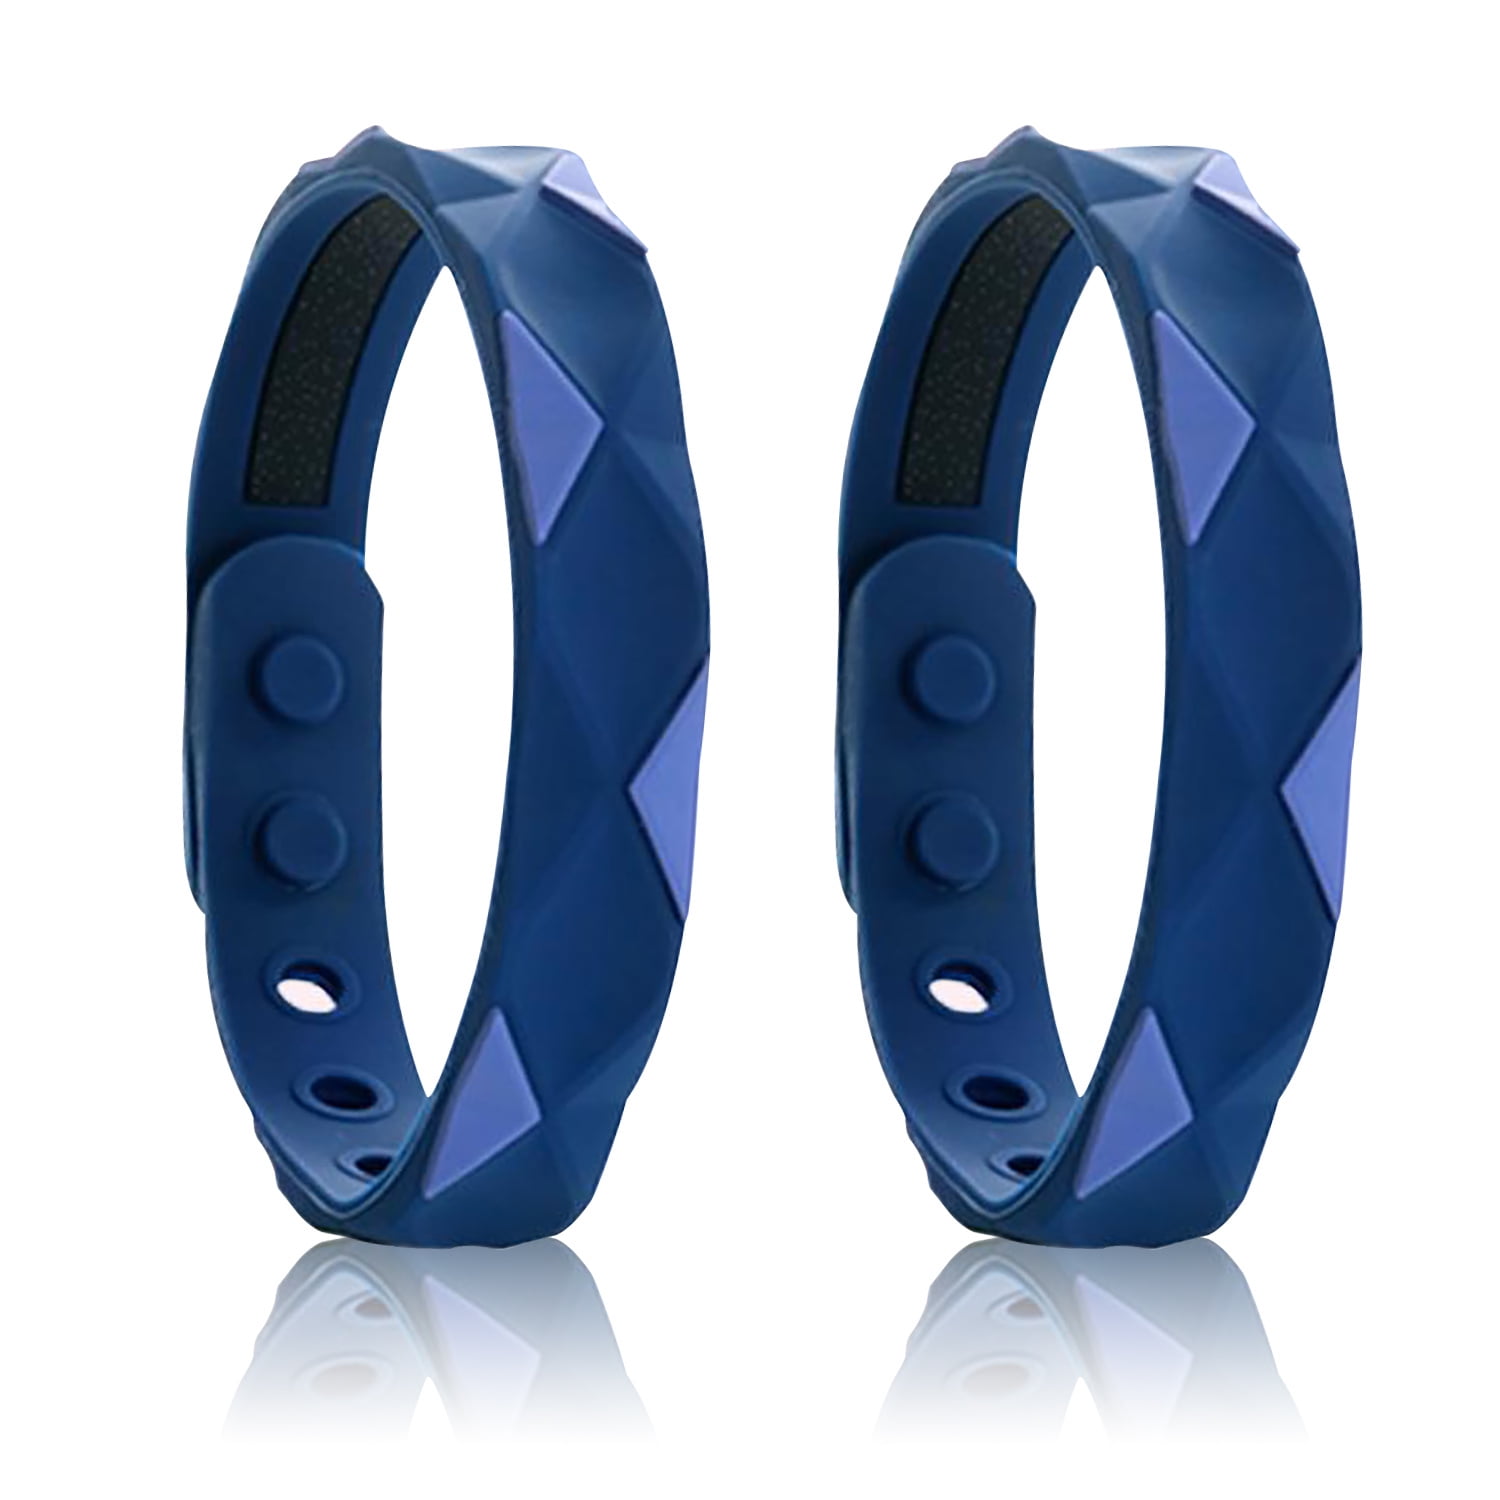 2 pieces Wristband Silicone Power Energy Bracelet Balance Sport band Size  MEDIUM | eBay